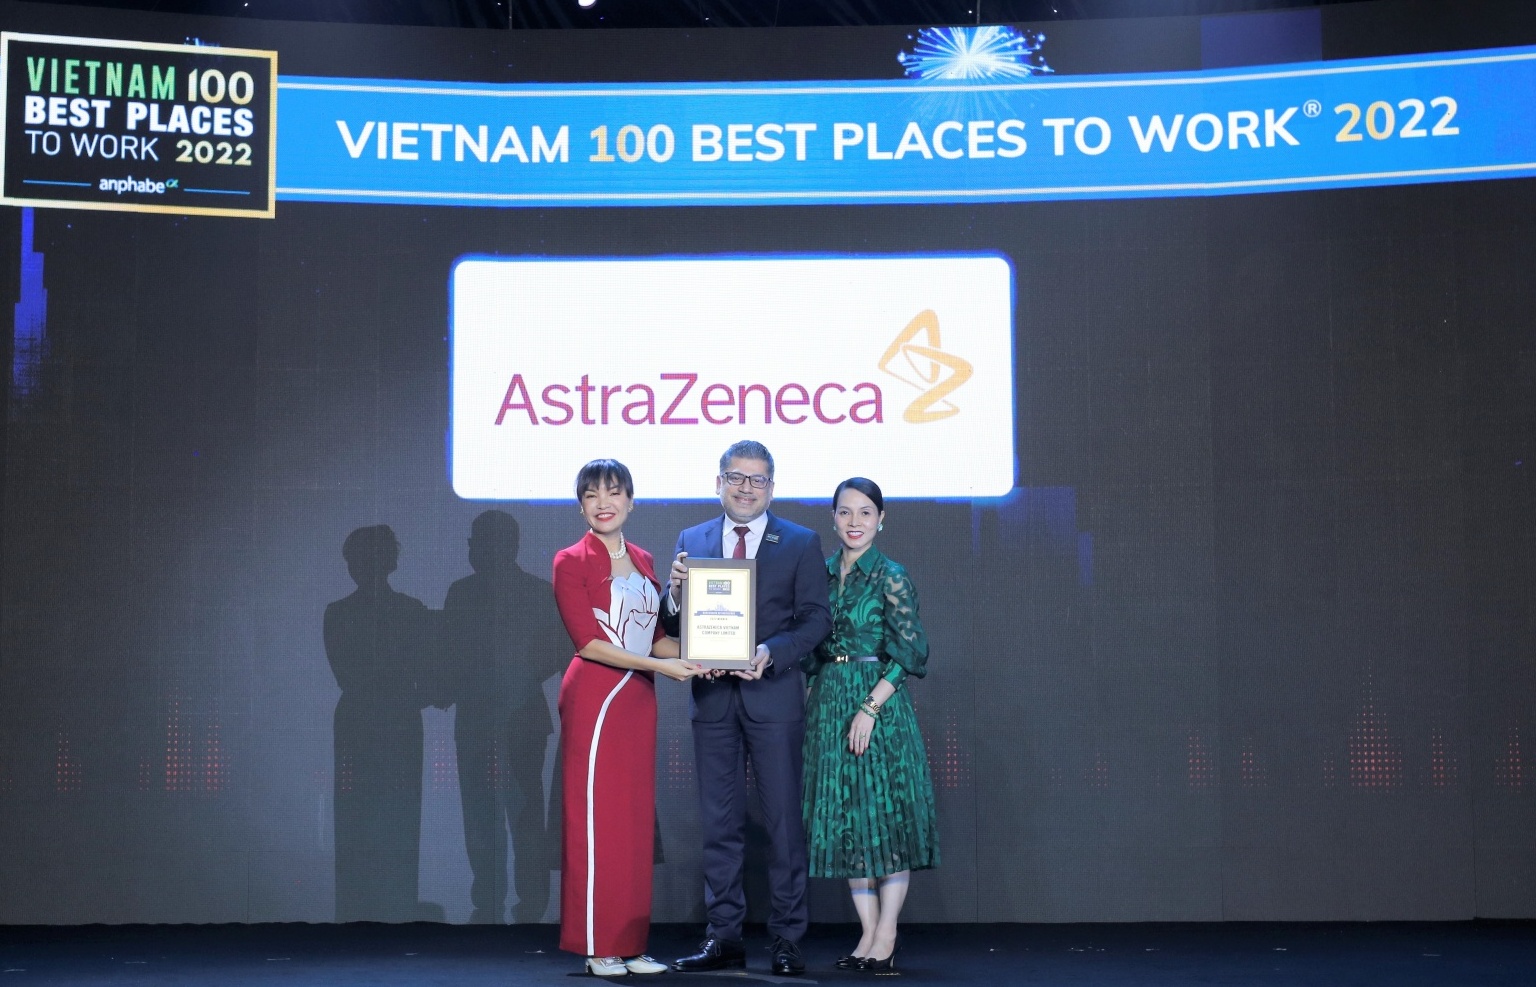 AstraZeneca honoured in Vietnam’s top 100 best places to work 2022